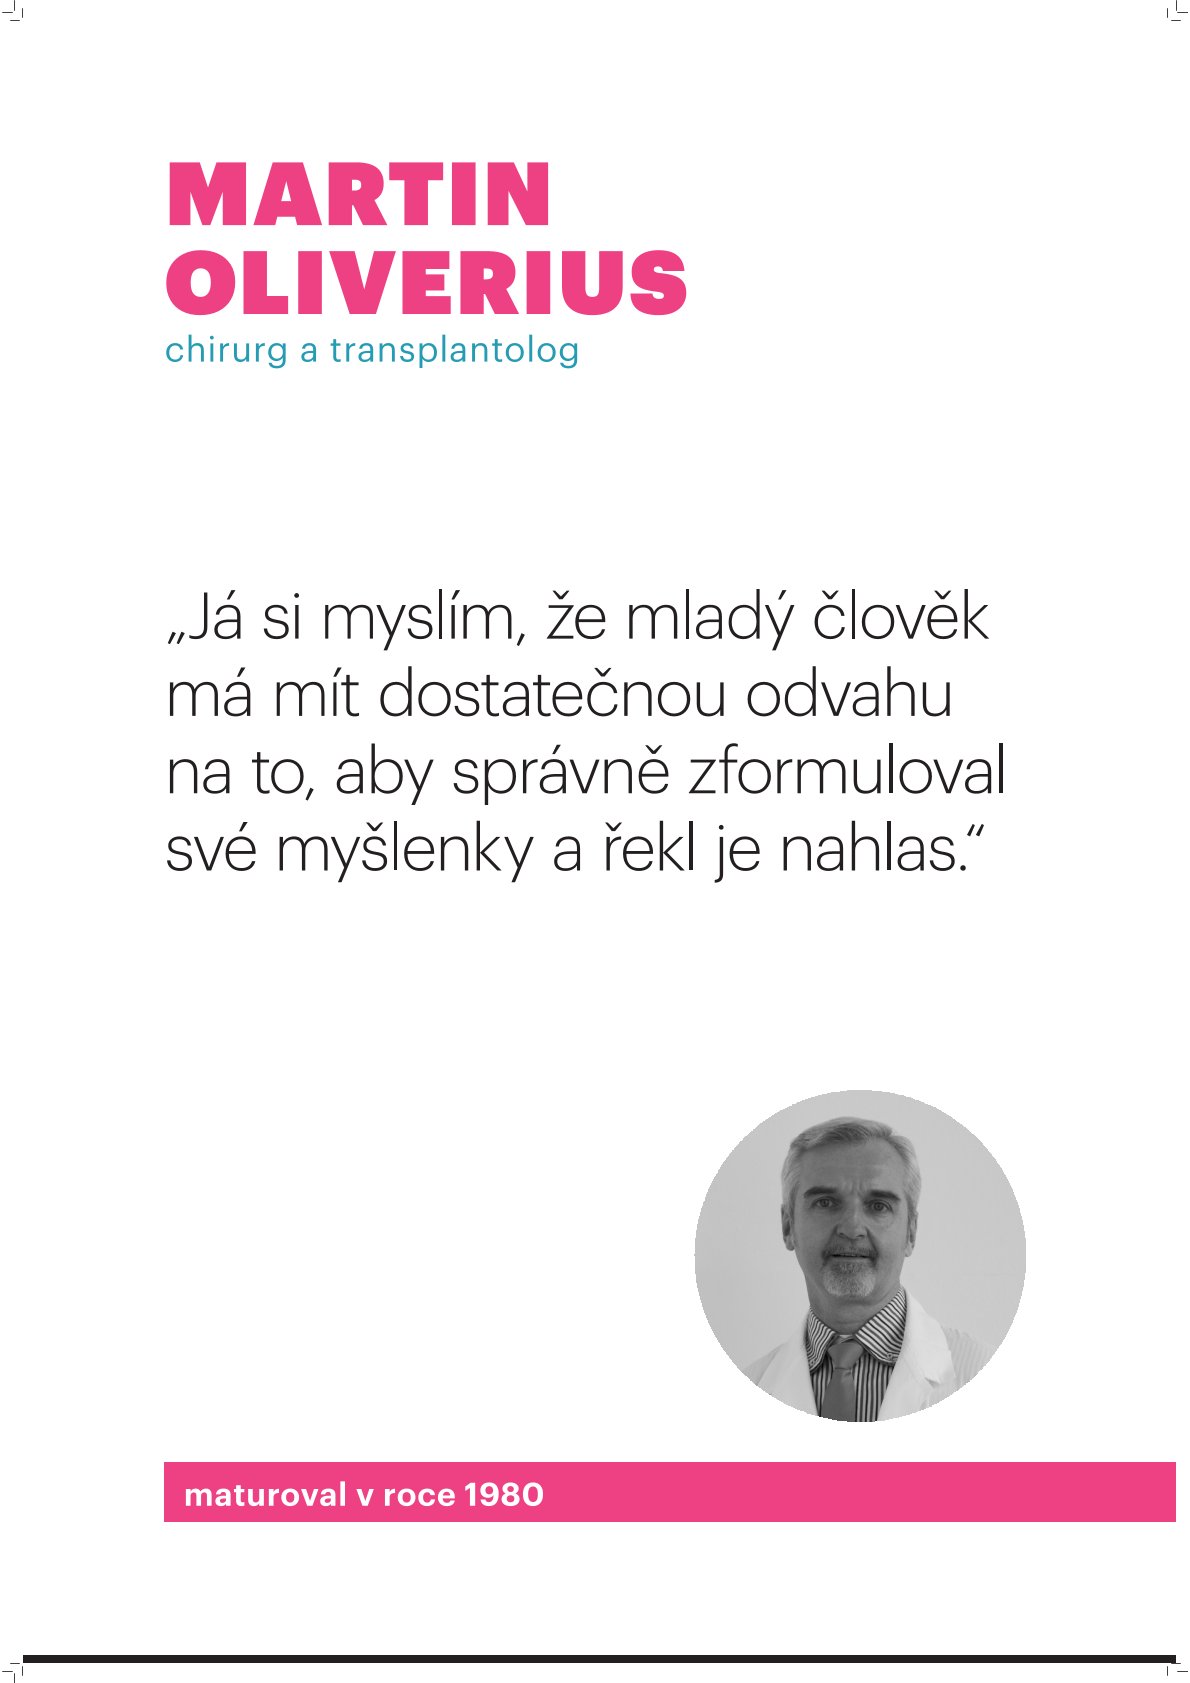 Martin Oliverius